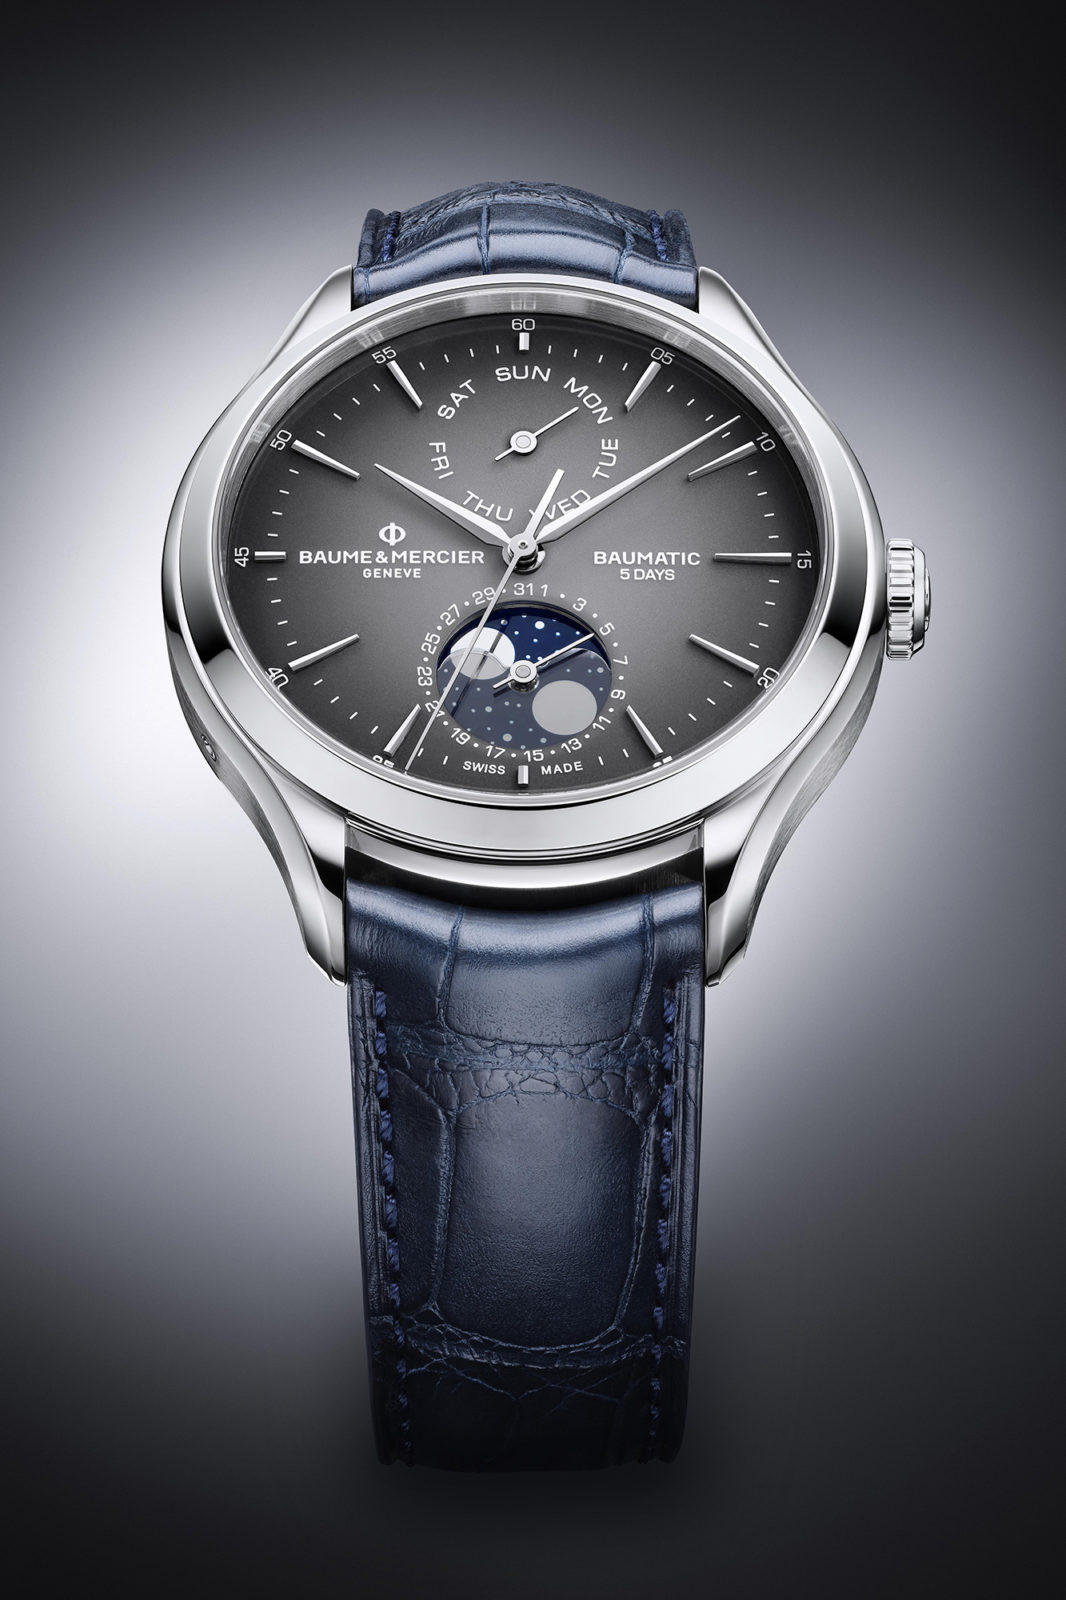 Baume & Mercier Watches & Wonders 2020 - Baumatic Date Jour Phase de Lune